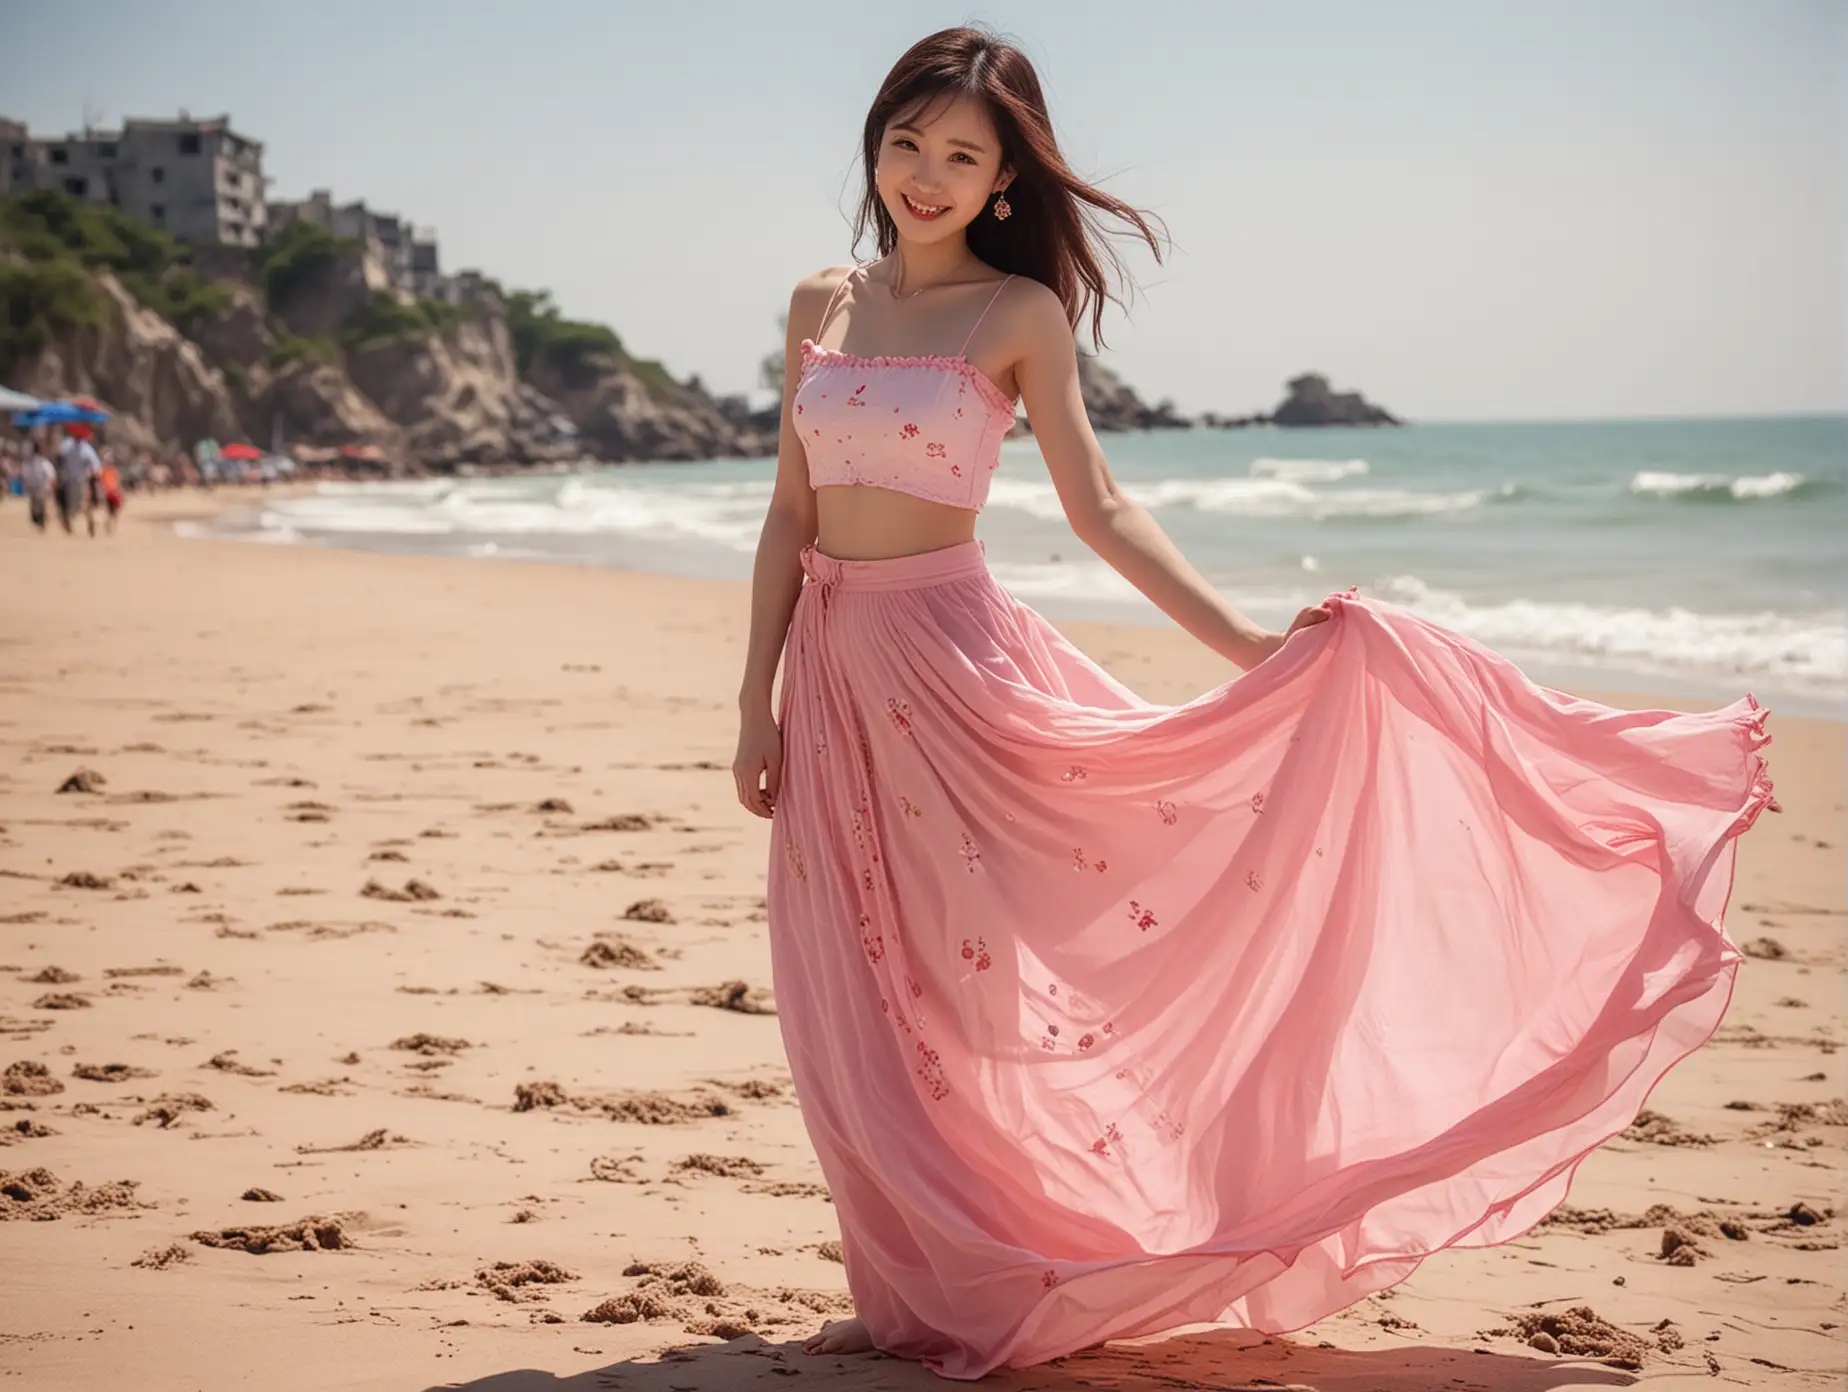 Chinese girl, slender waist, pink long skirt, smile, beach, sunlight, long legs